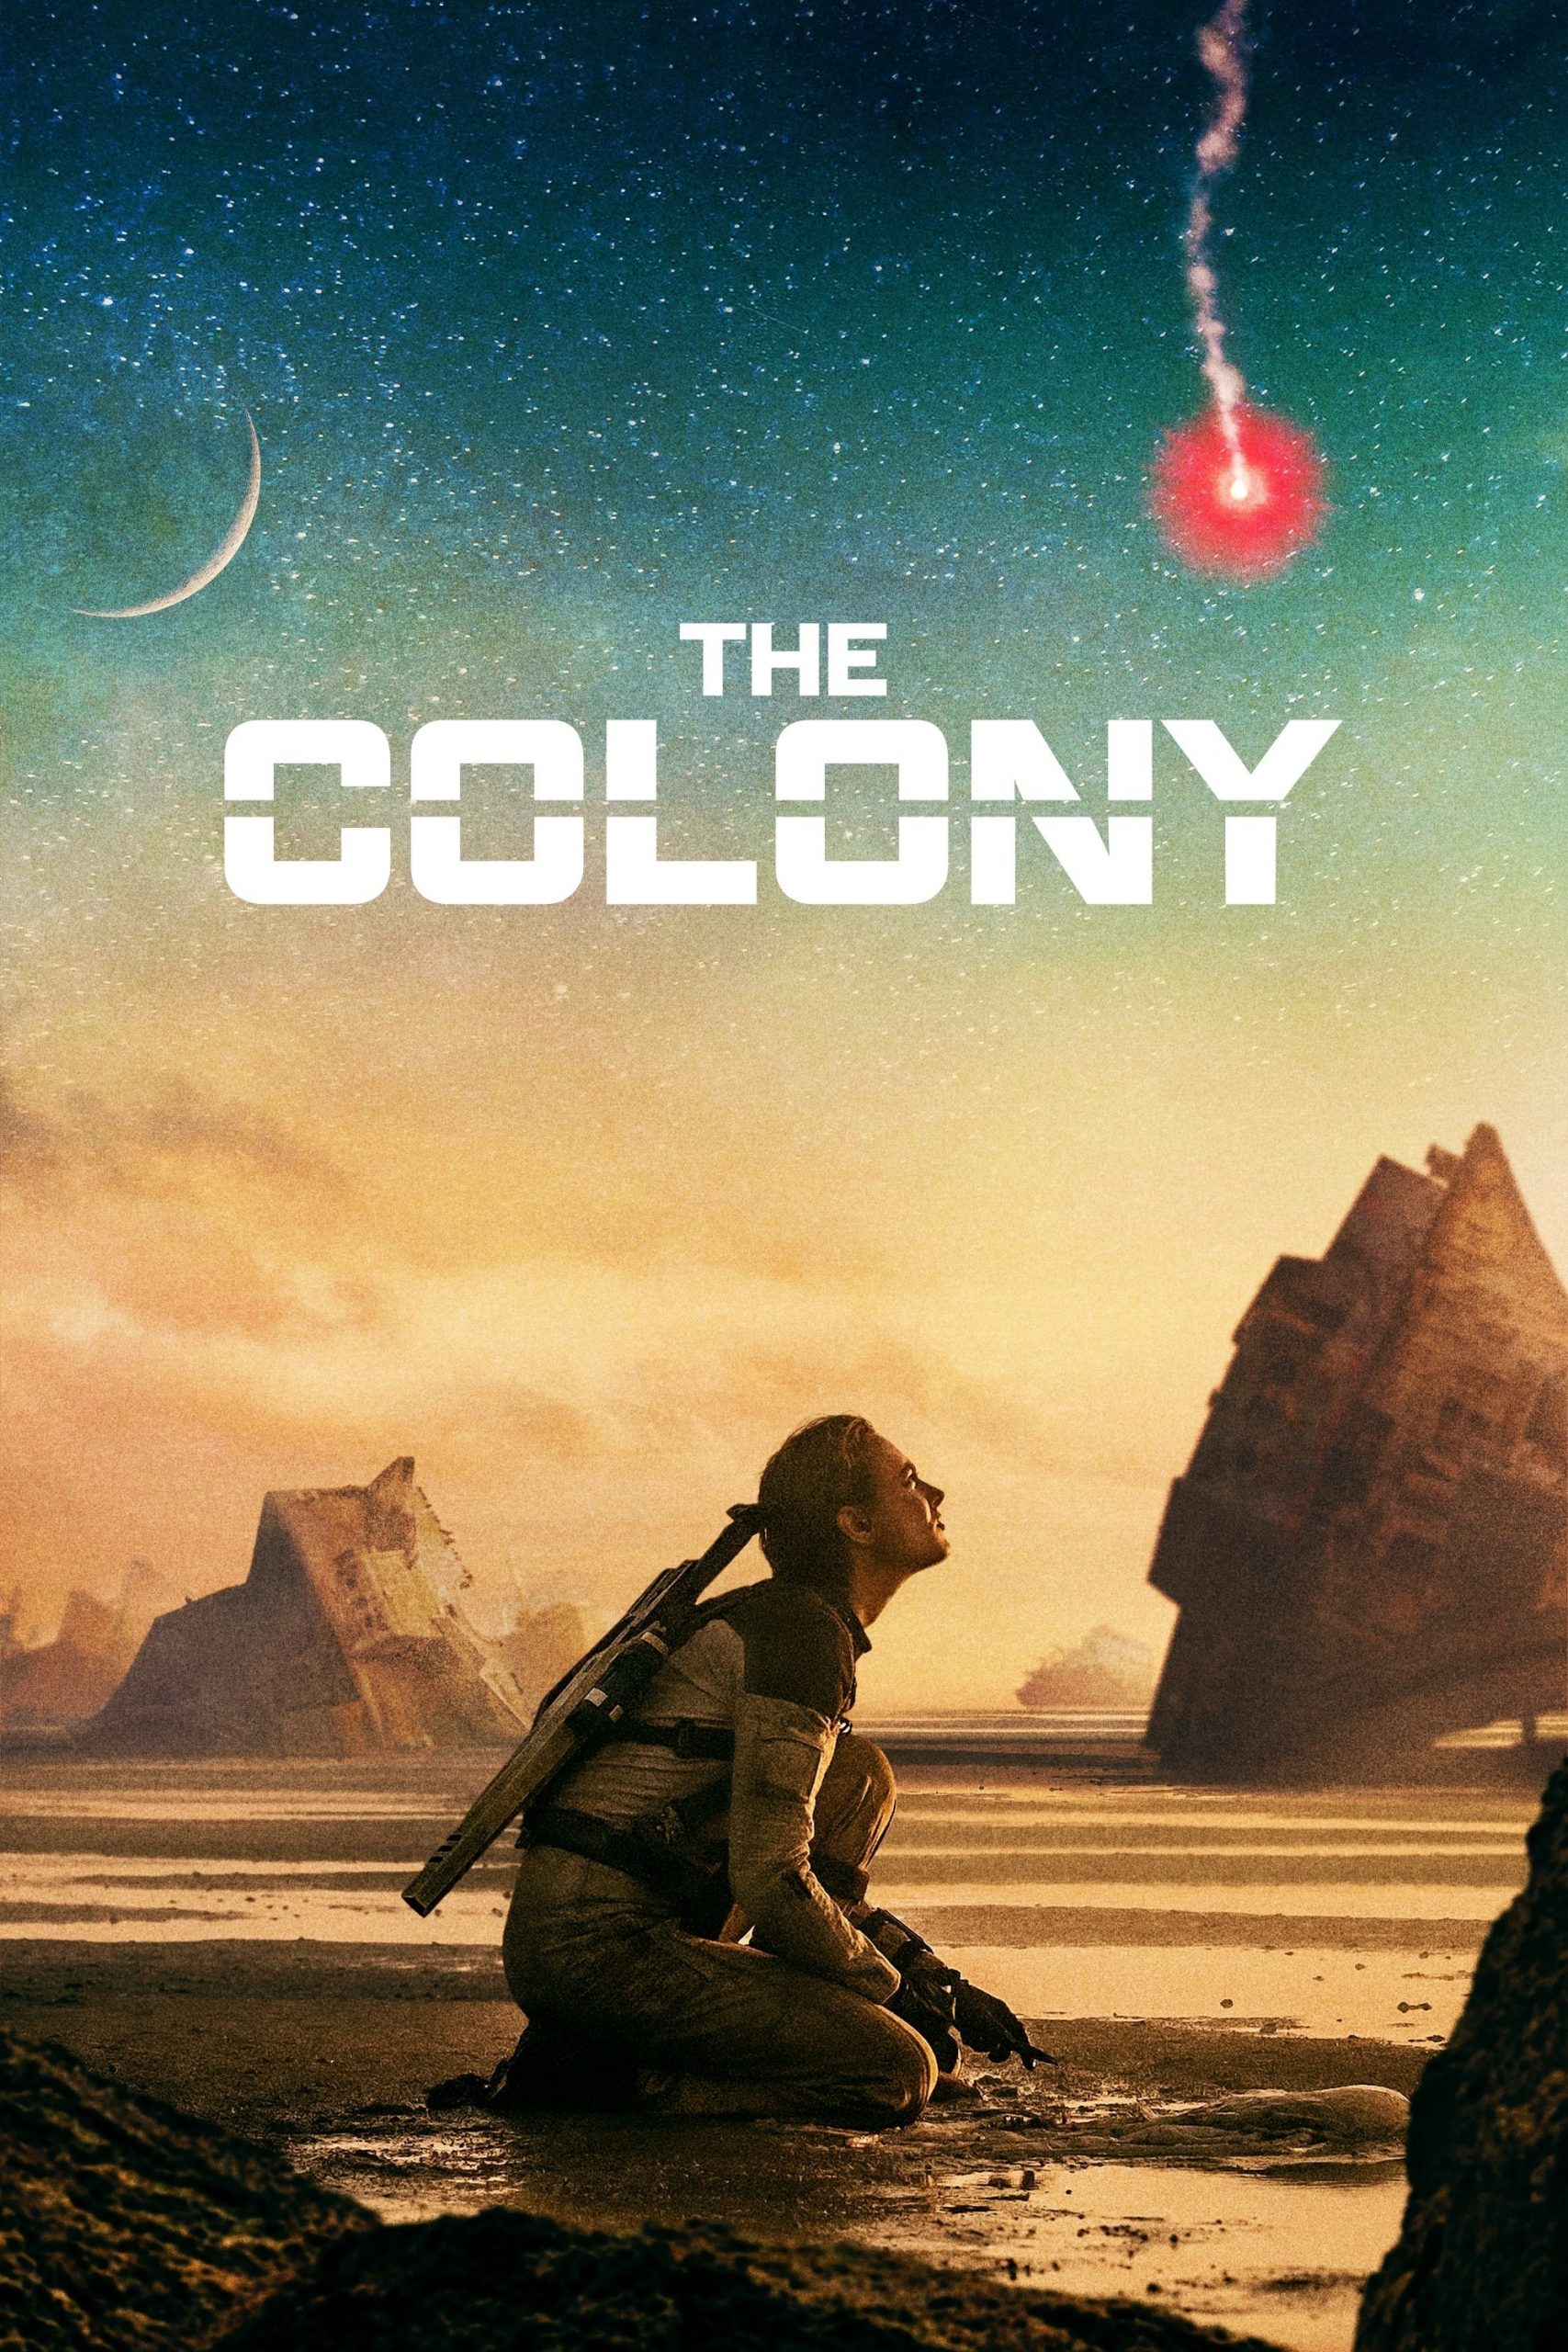 دانلود فیلم The Colony 2021